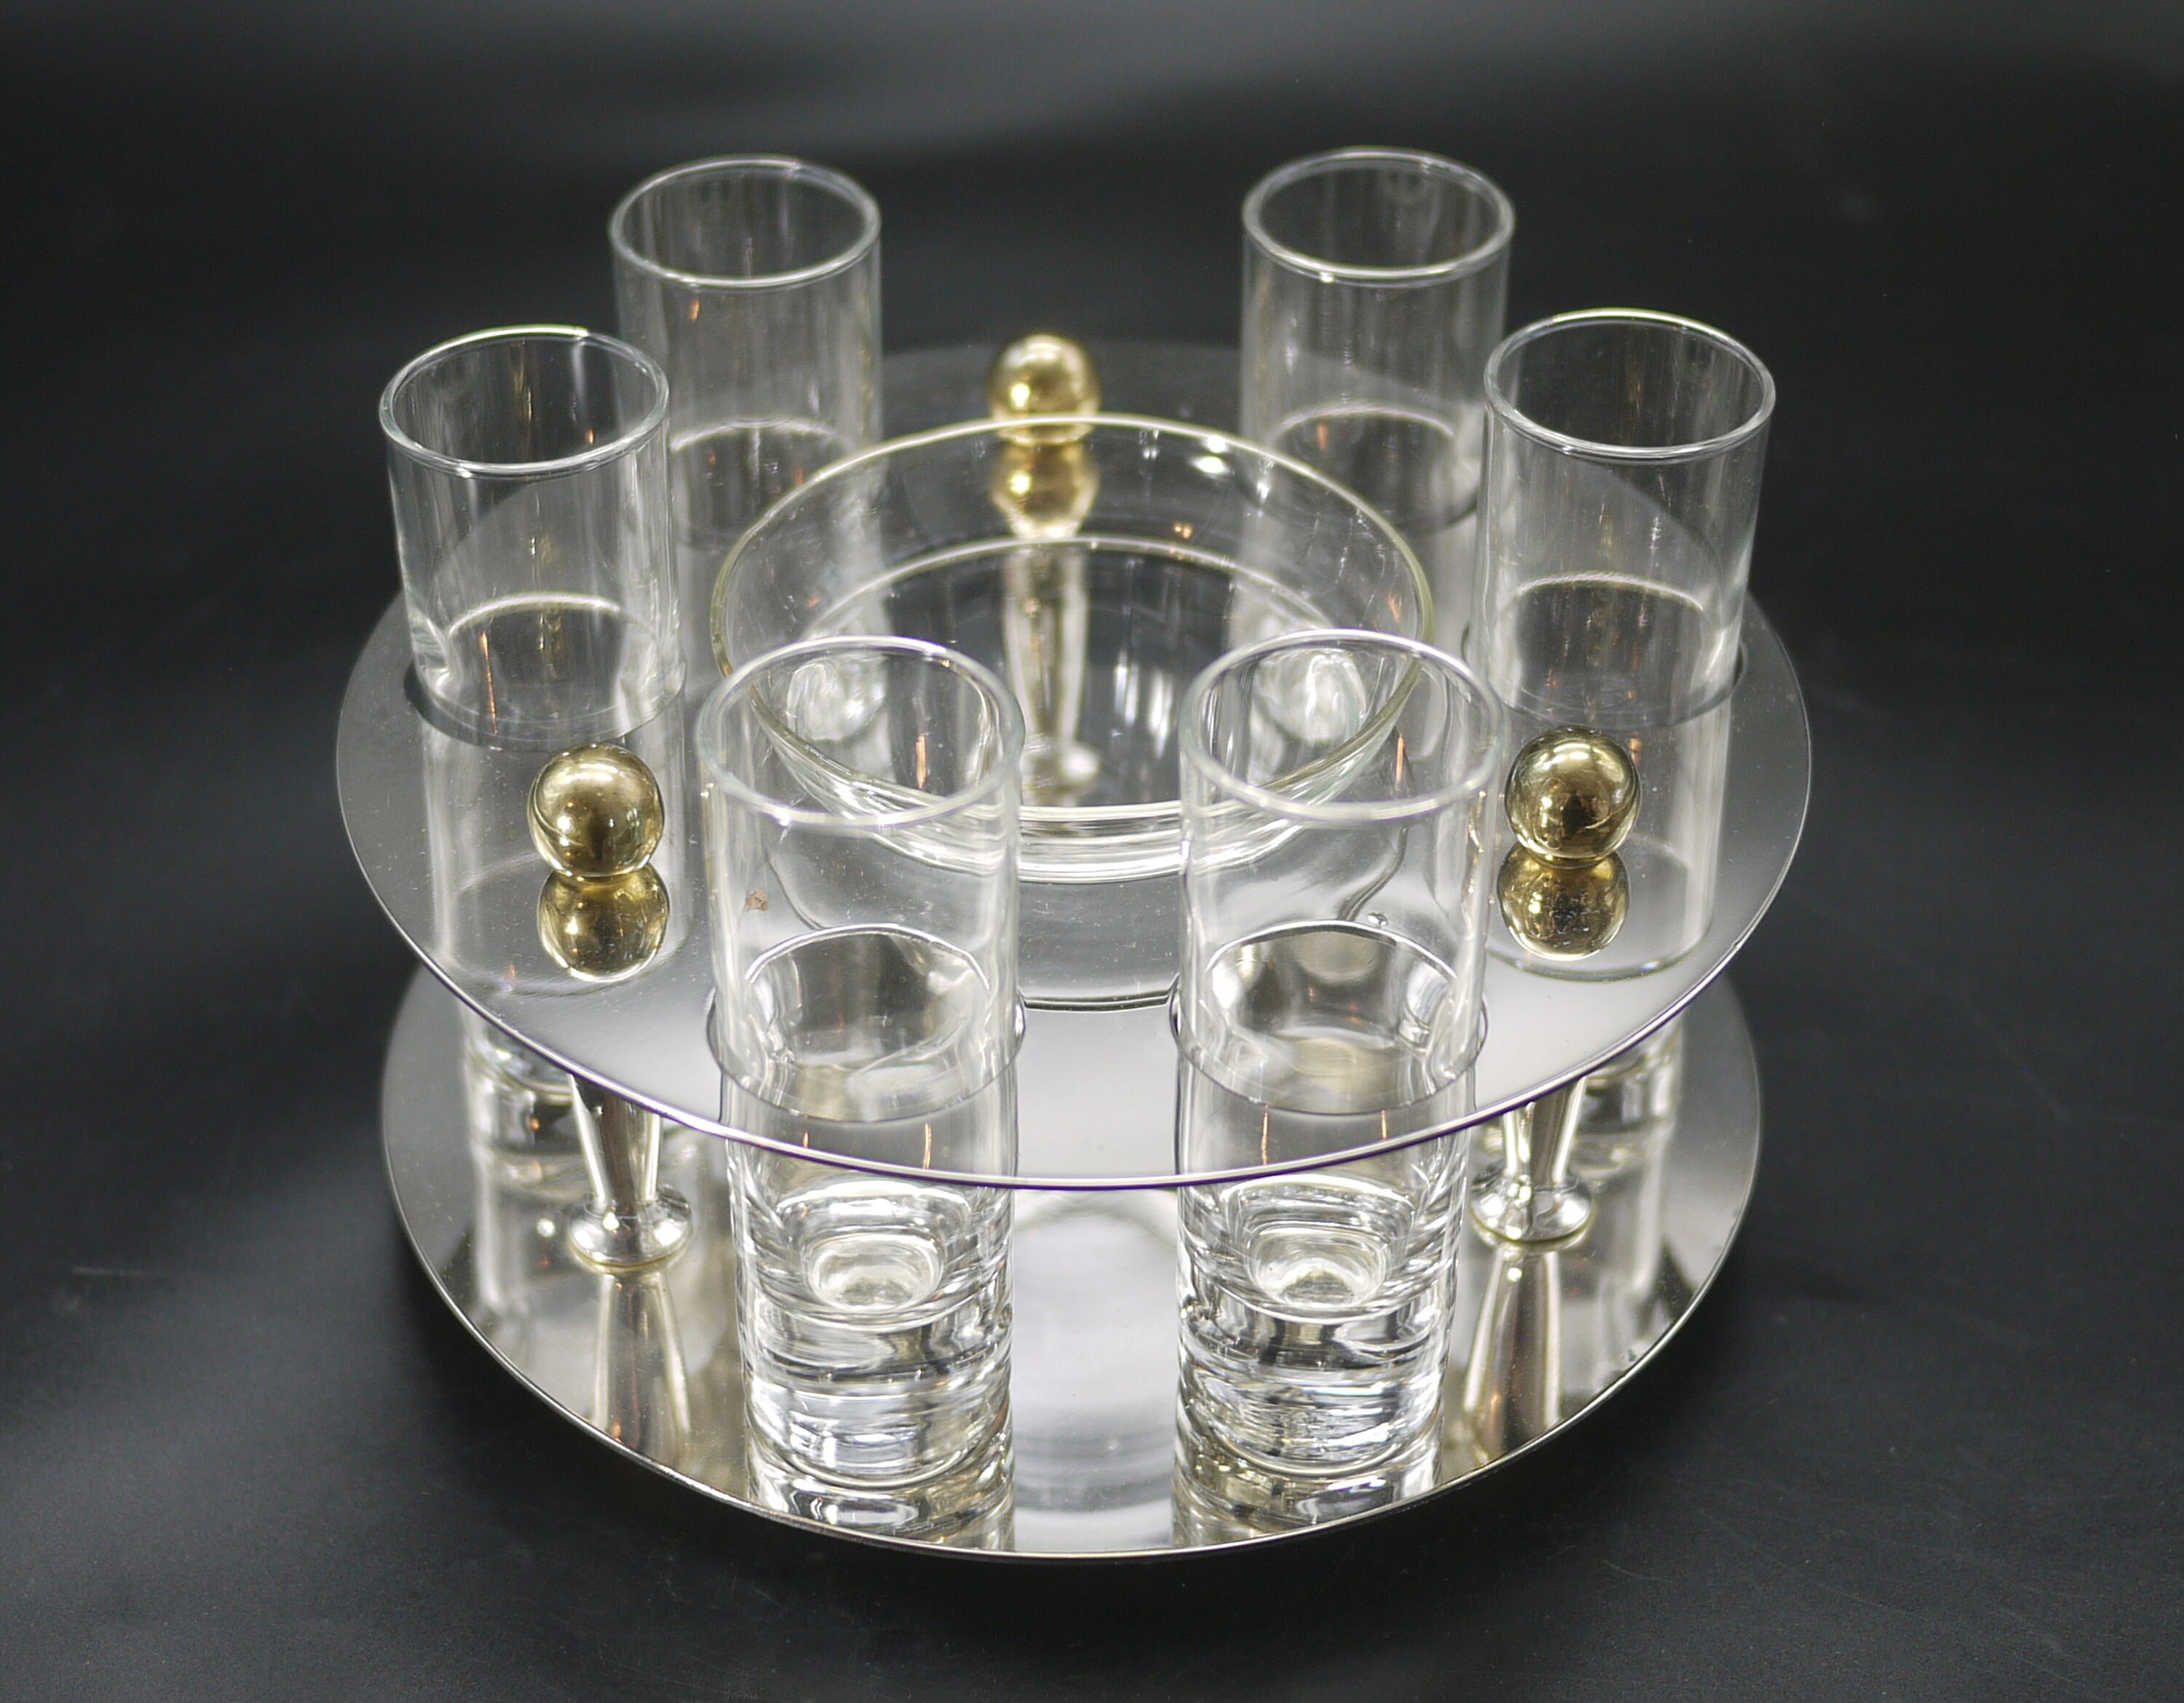 Vodka glasses and caviar set